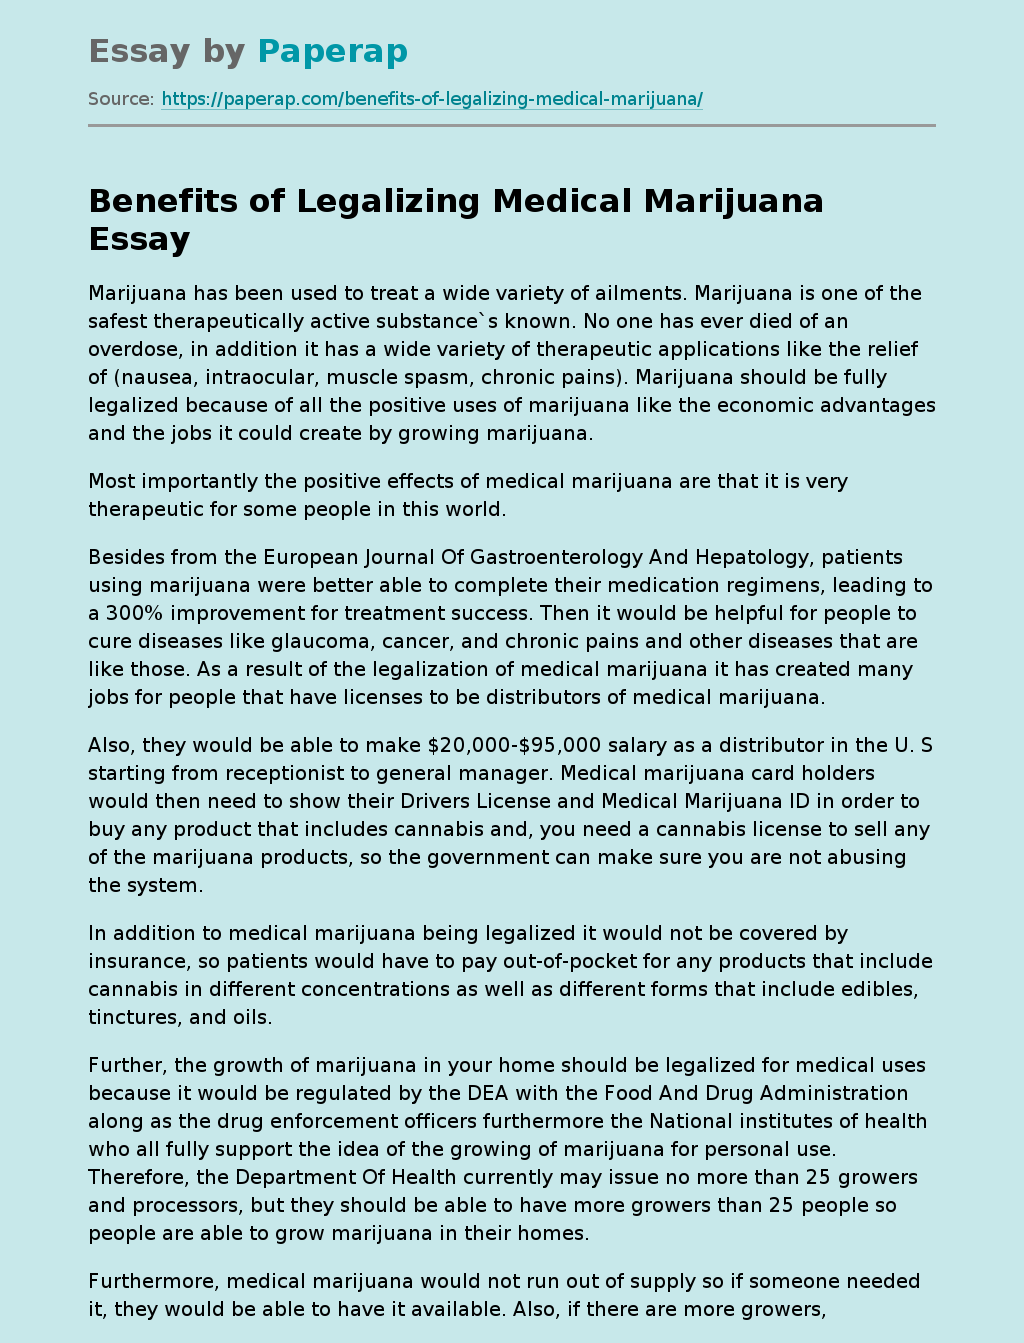 Benefits of Legalizing Medical Marijuana